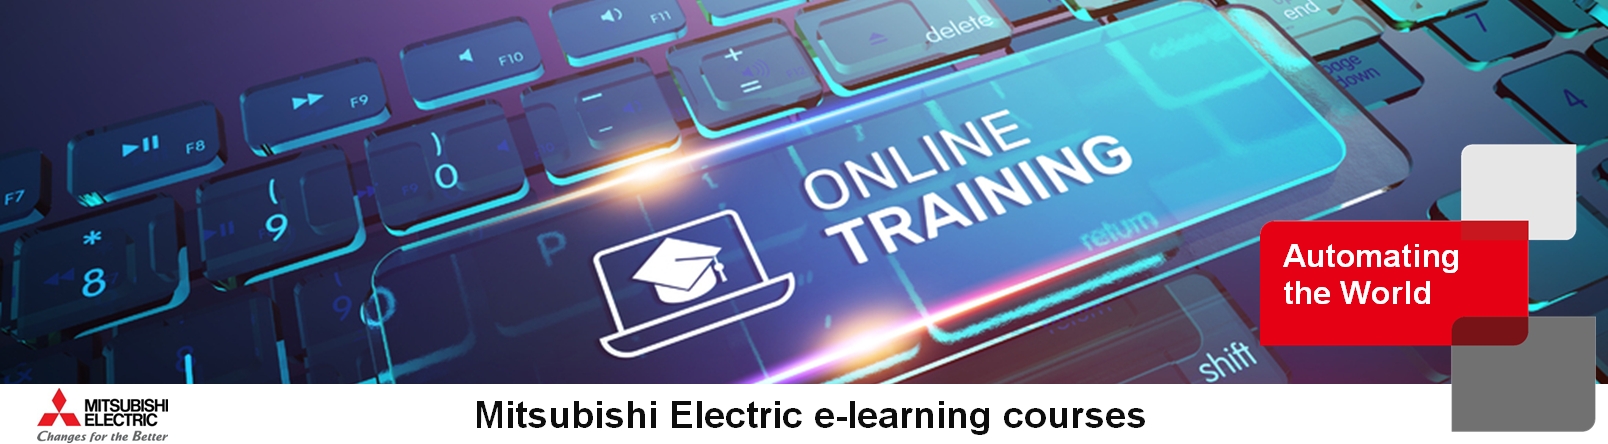 780px Mitsubishi Electric FA e-learning courses